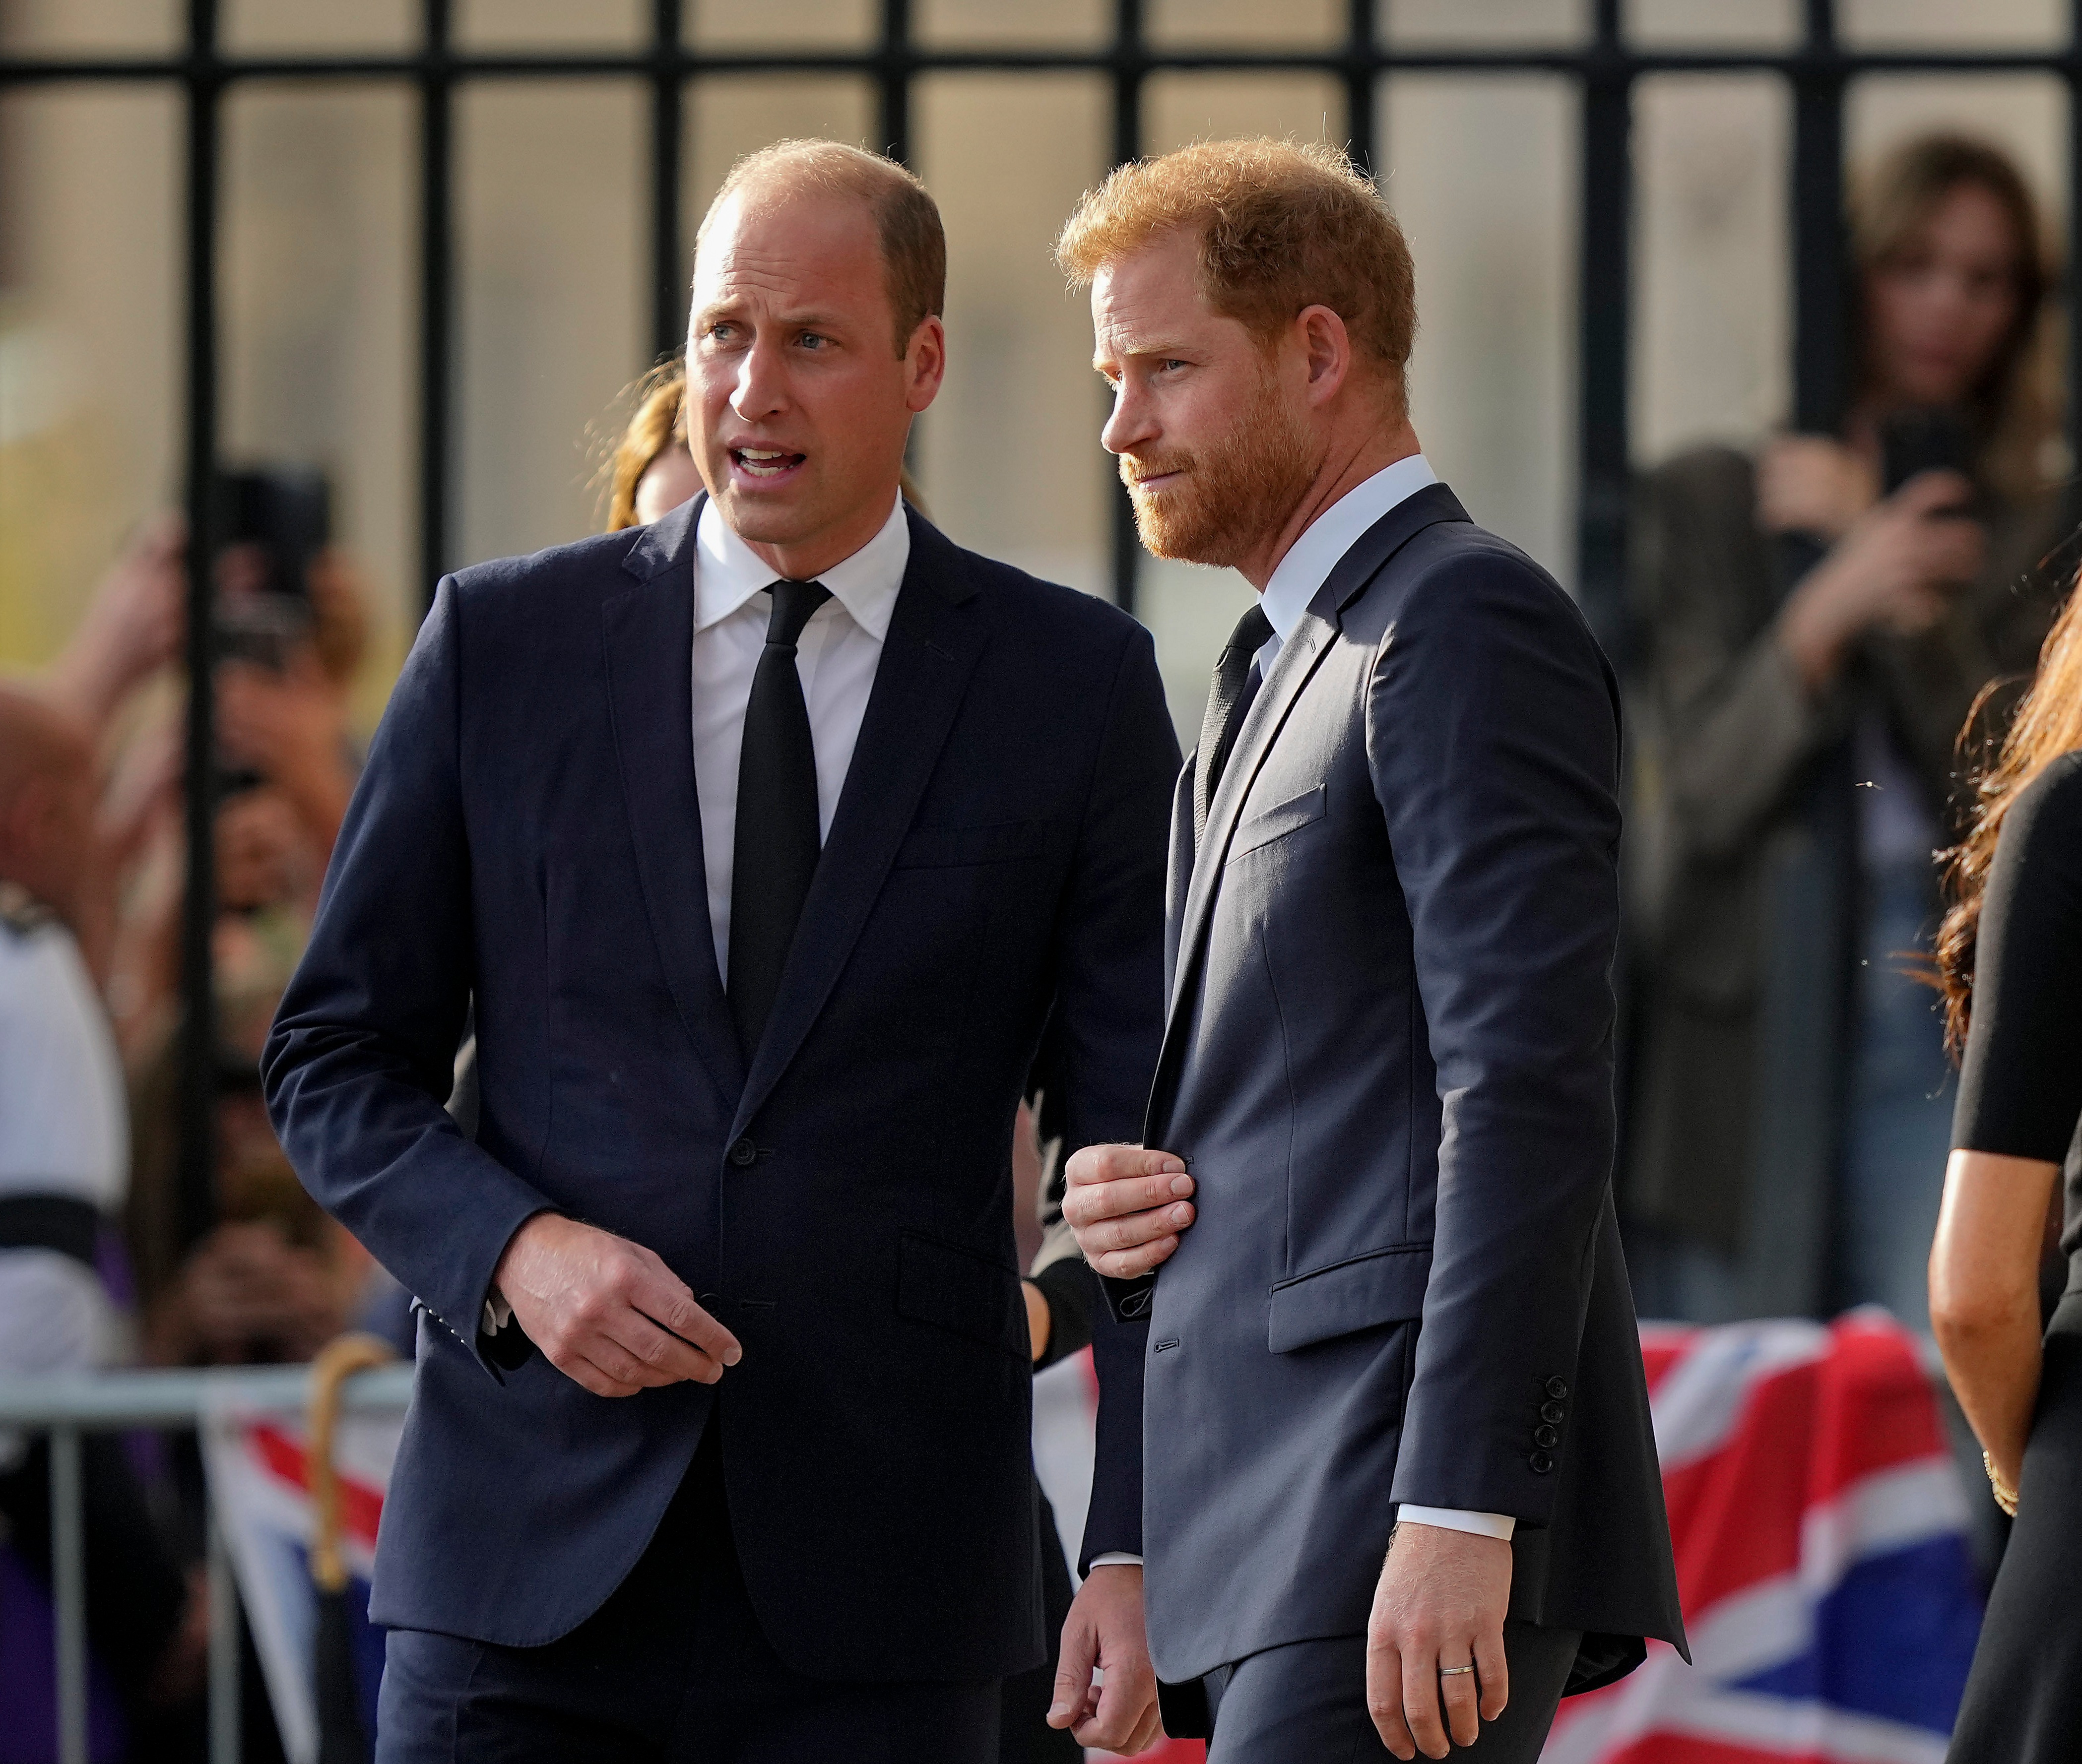 Un expert royal a révélé pourquoi William n'a pas rencontré Harry pendant son voyage